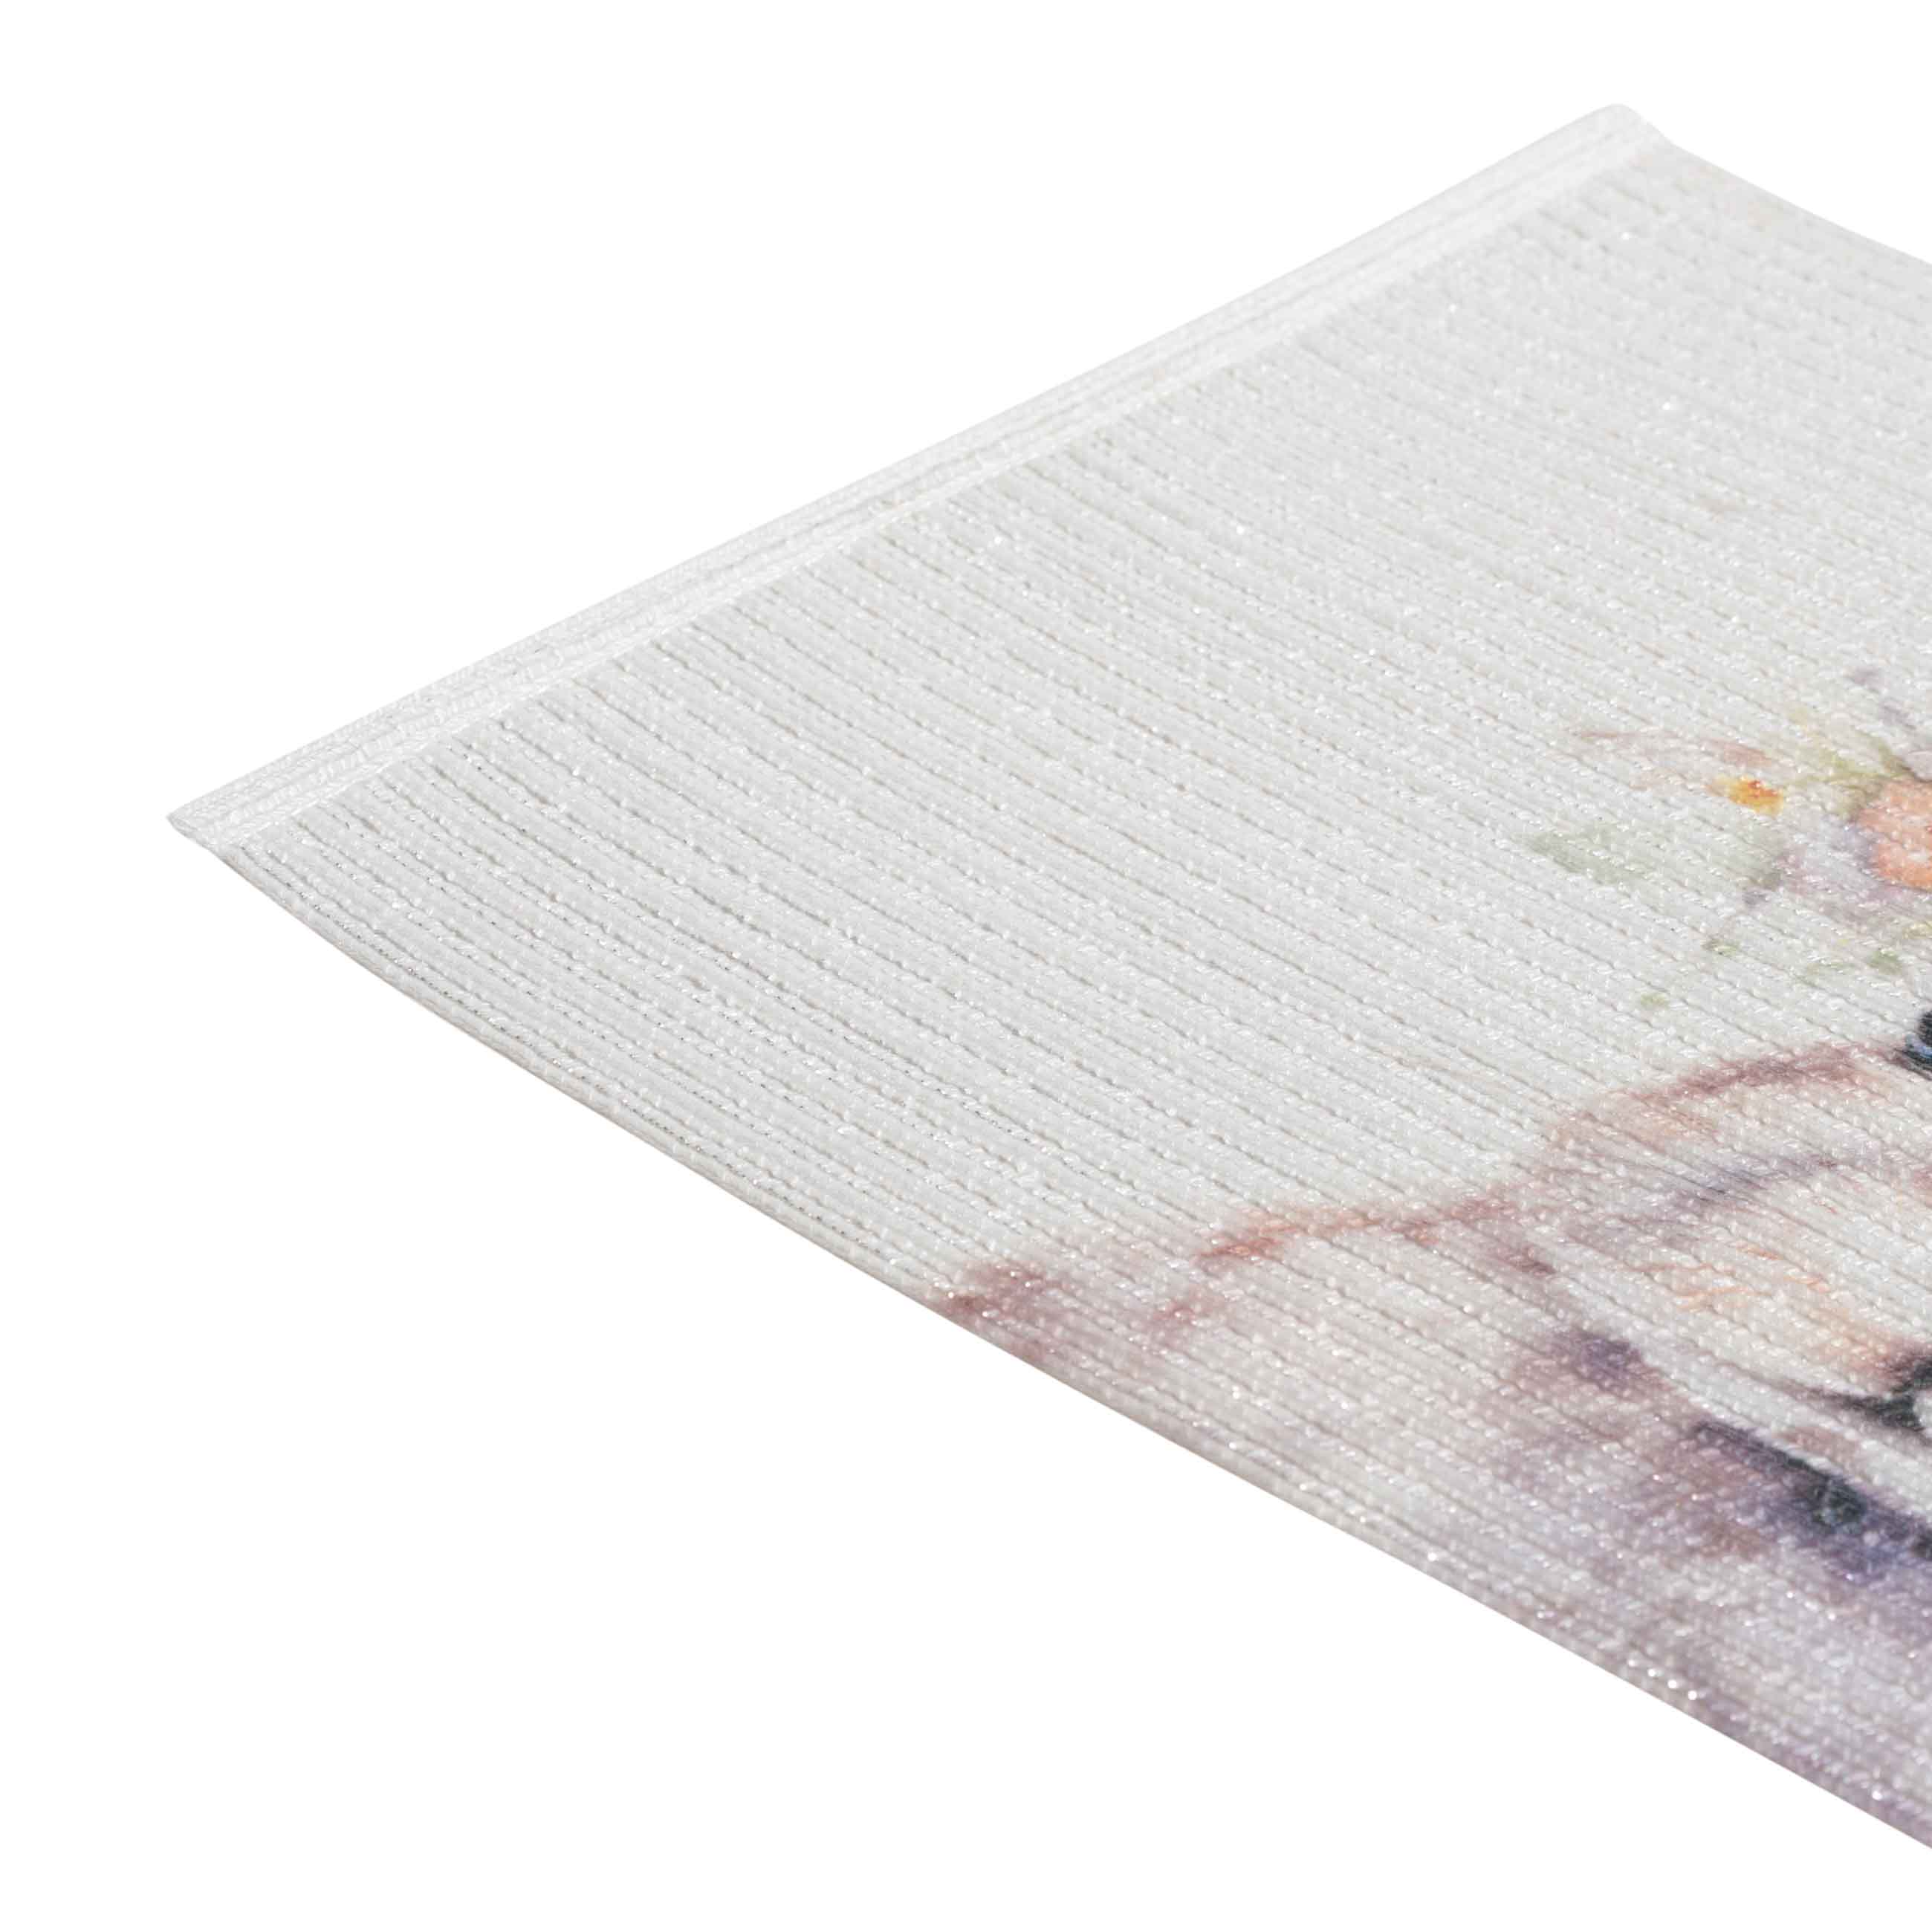 Салфетка под приборы, 30х45 см, полиэстер, прямоугольная, белая, Кролик в венке, Rotary print изображение № 2